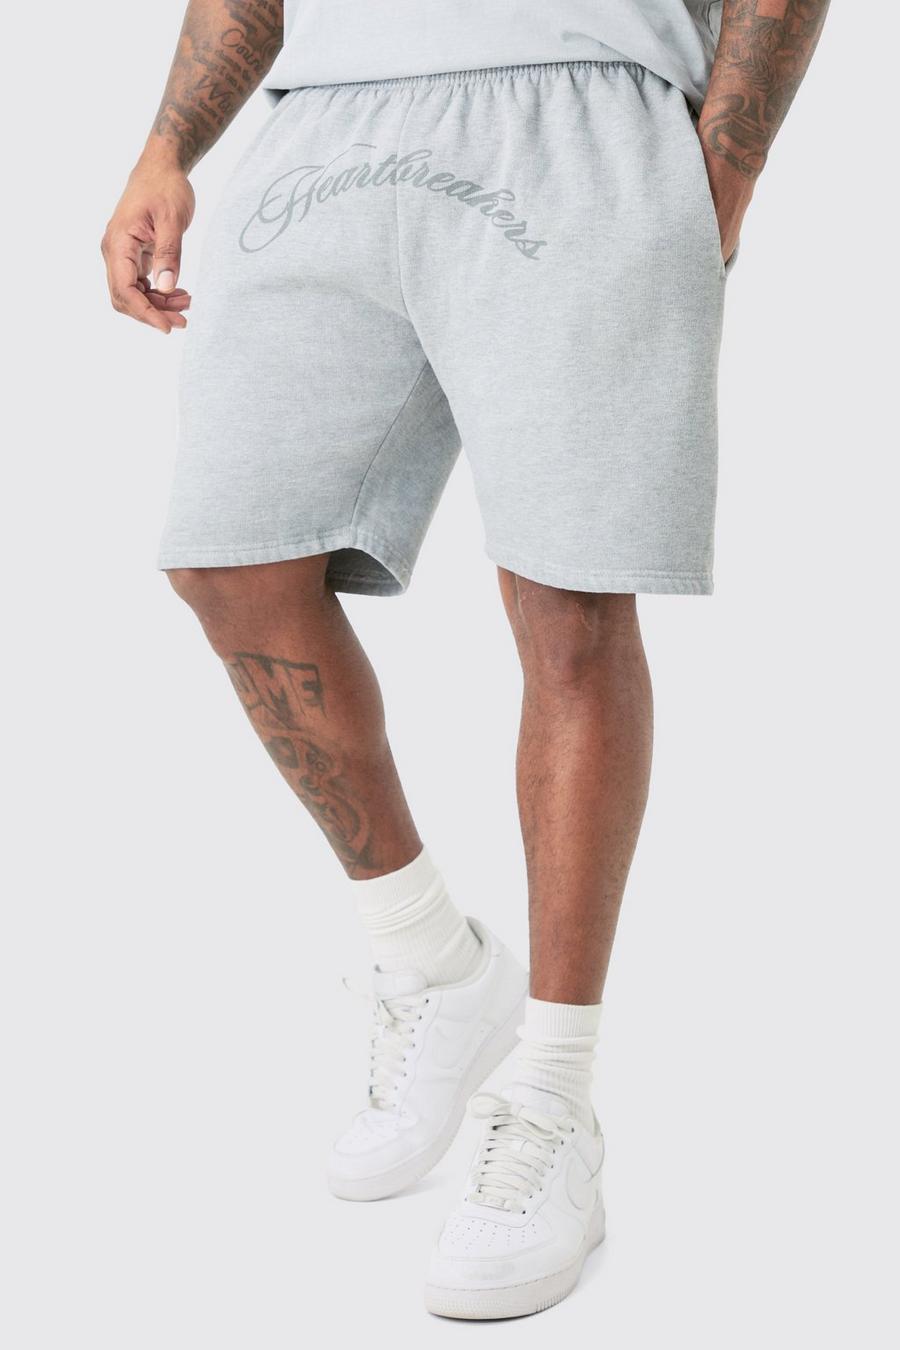 Pantalones cortos Plus oversize grises con estampado Hearbreakers, Grey